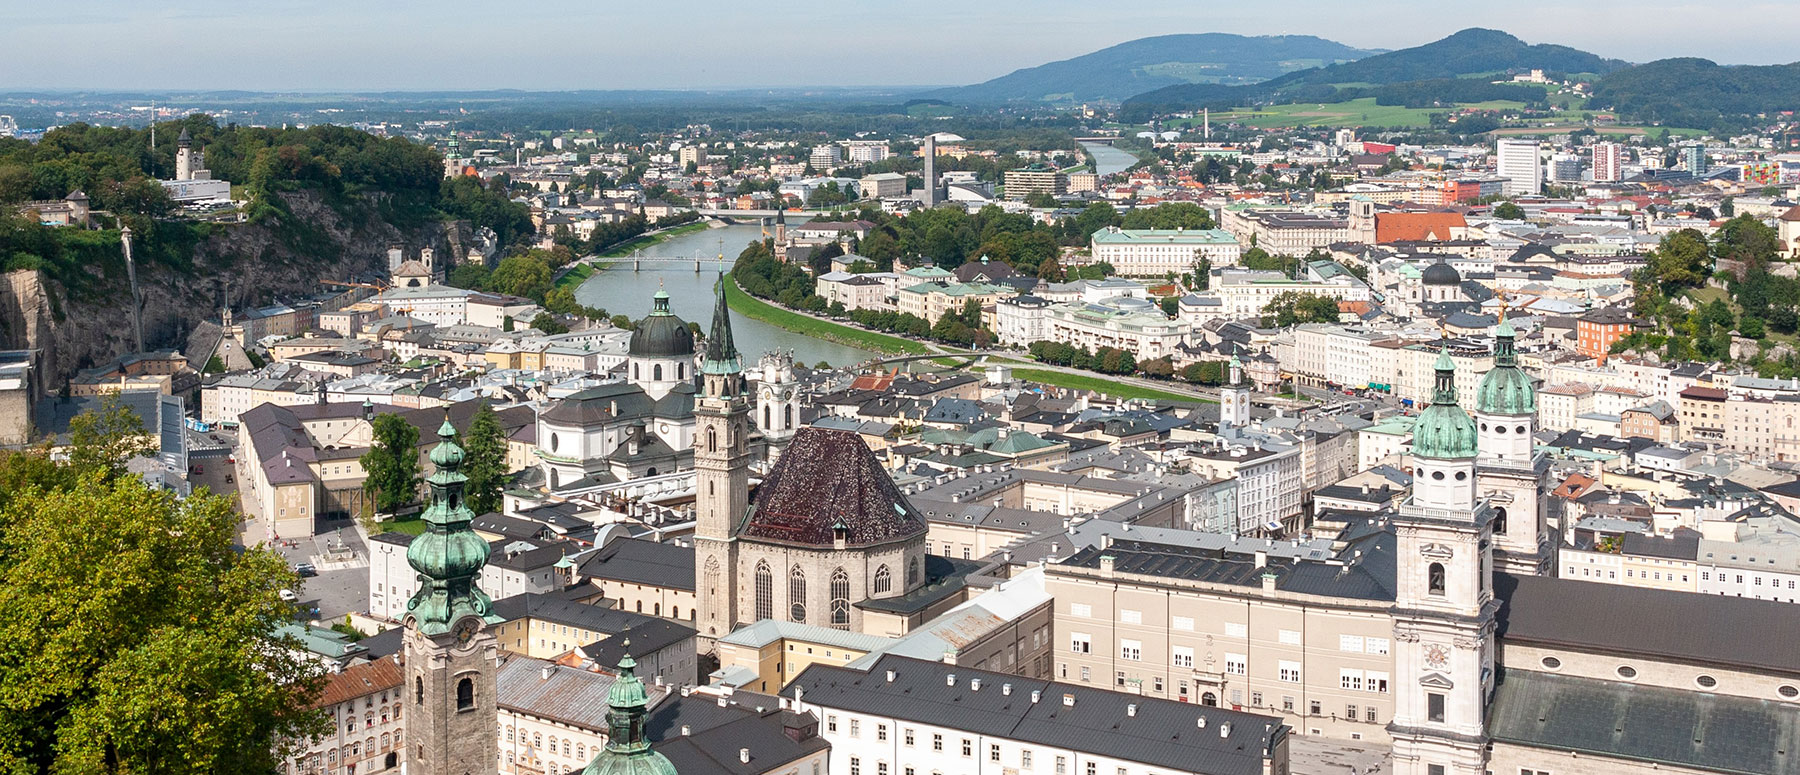 Blick aufs sommerliche Salzburg von der Festung Hohensalzburg